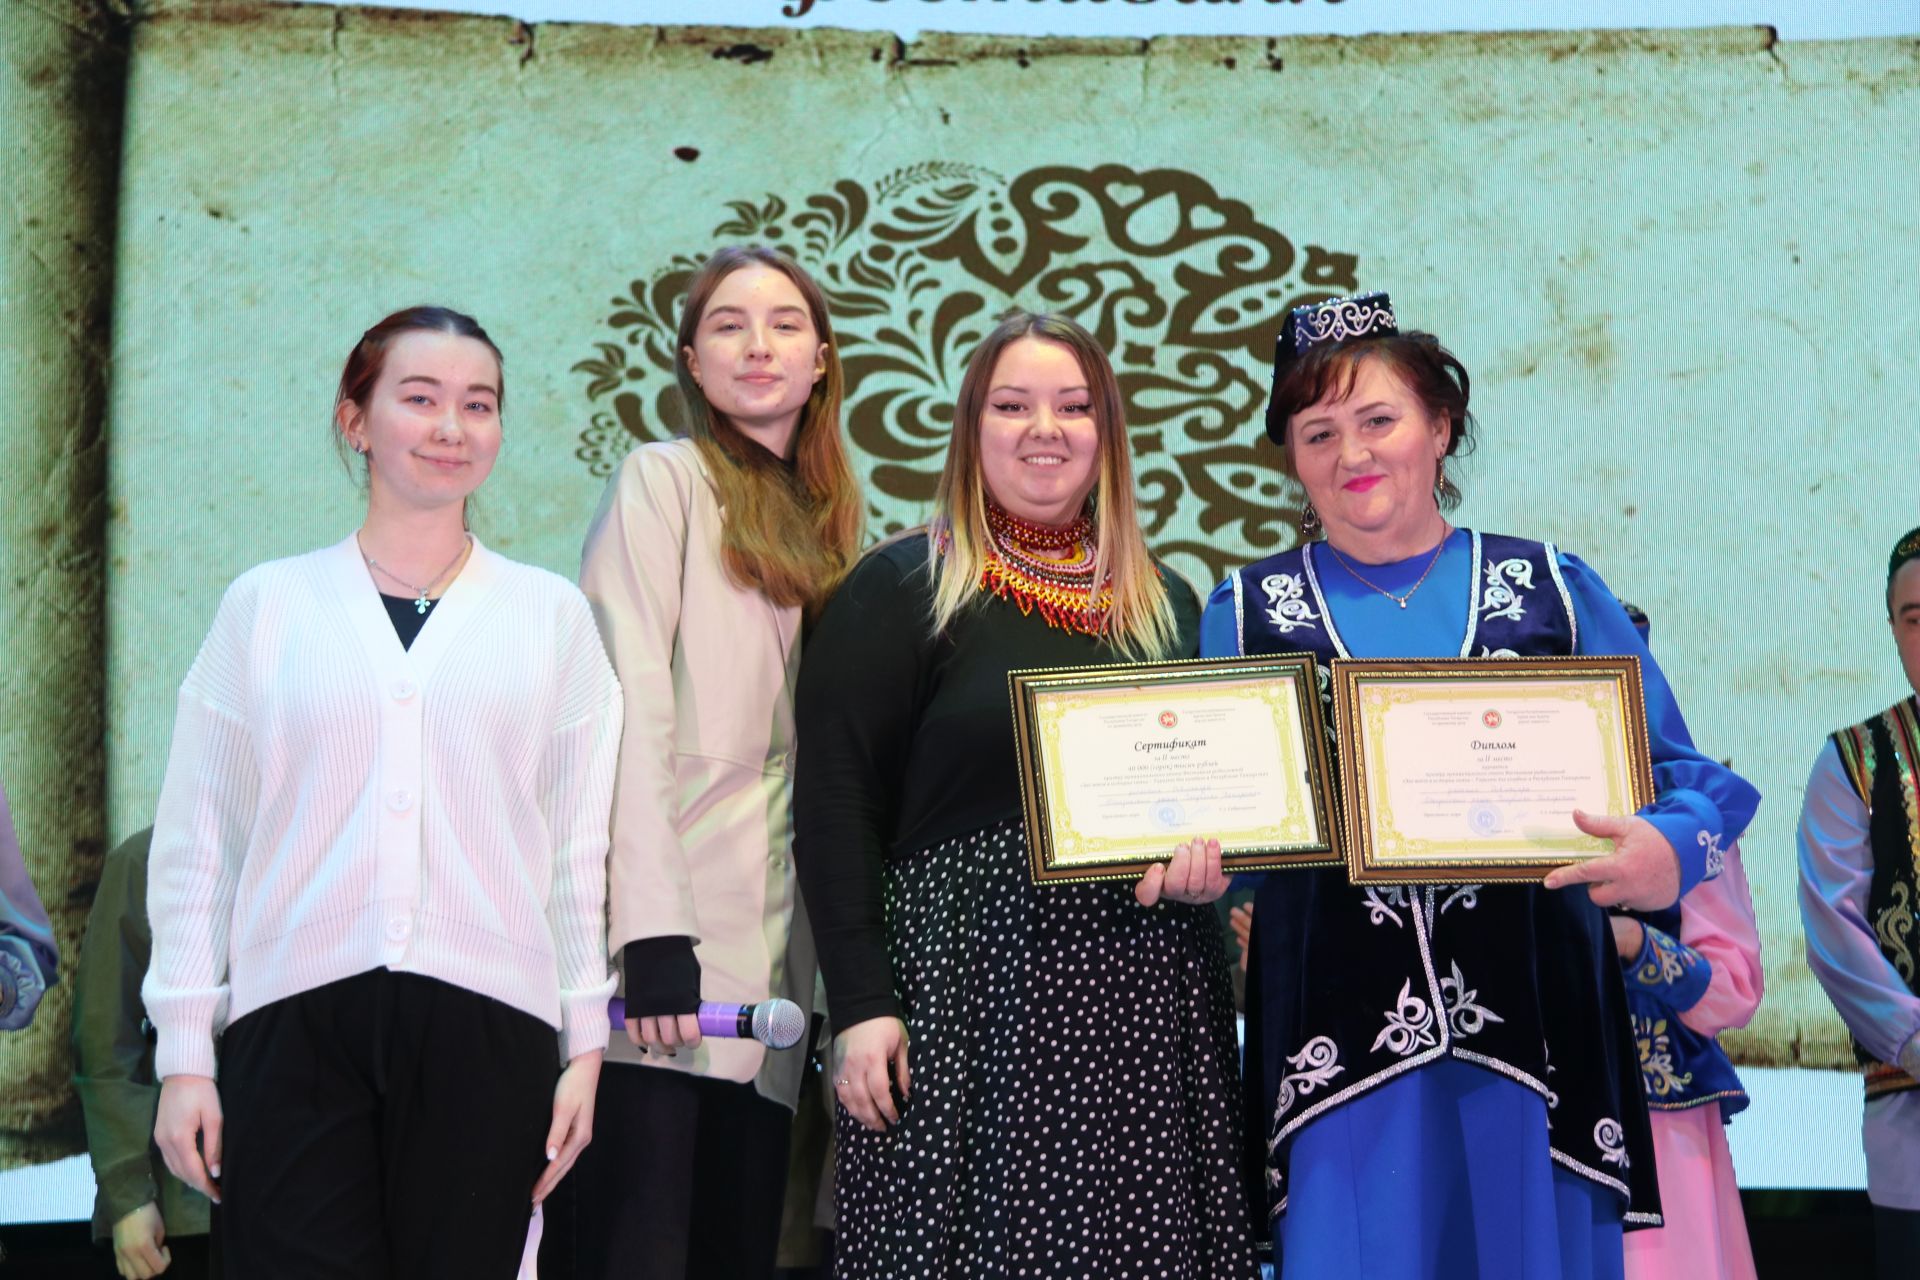 Байрякинская семья стала победителем фестиваля родословной